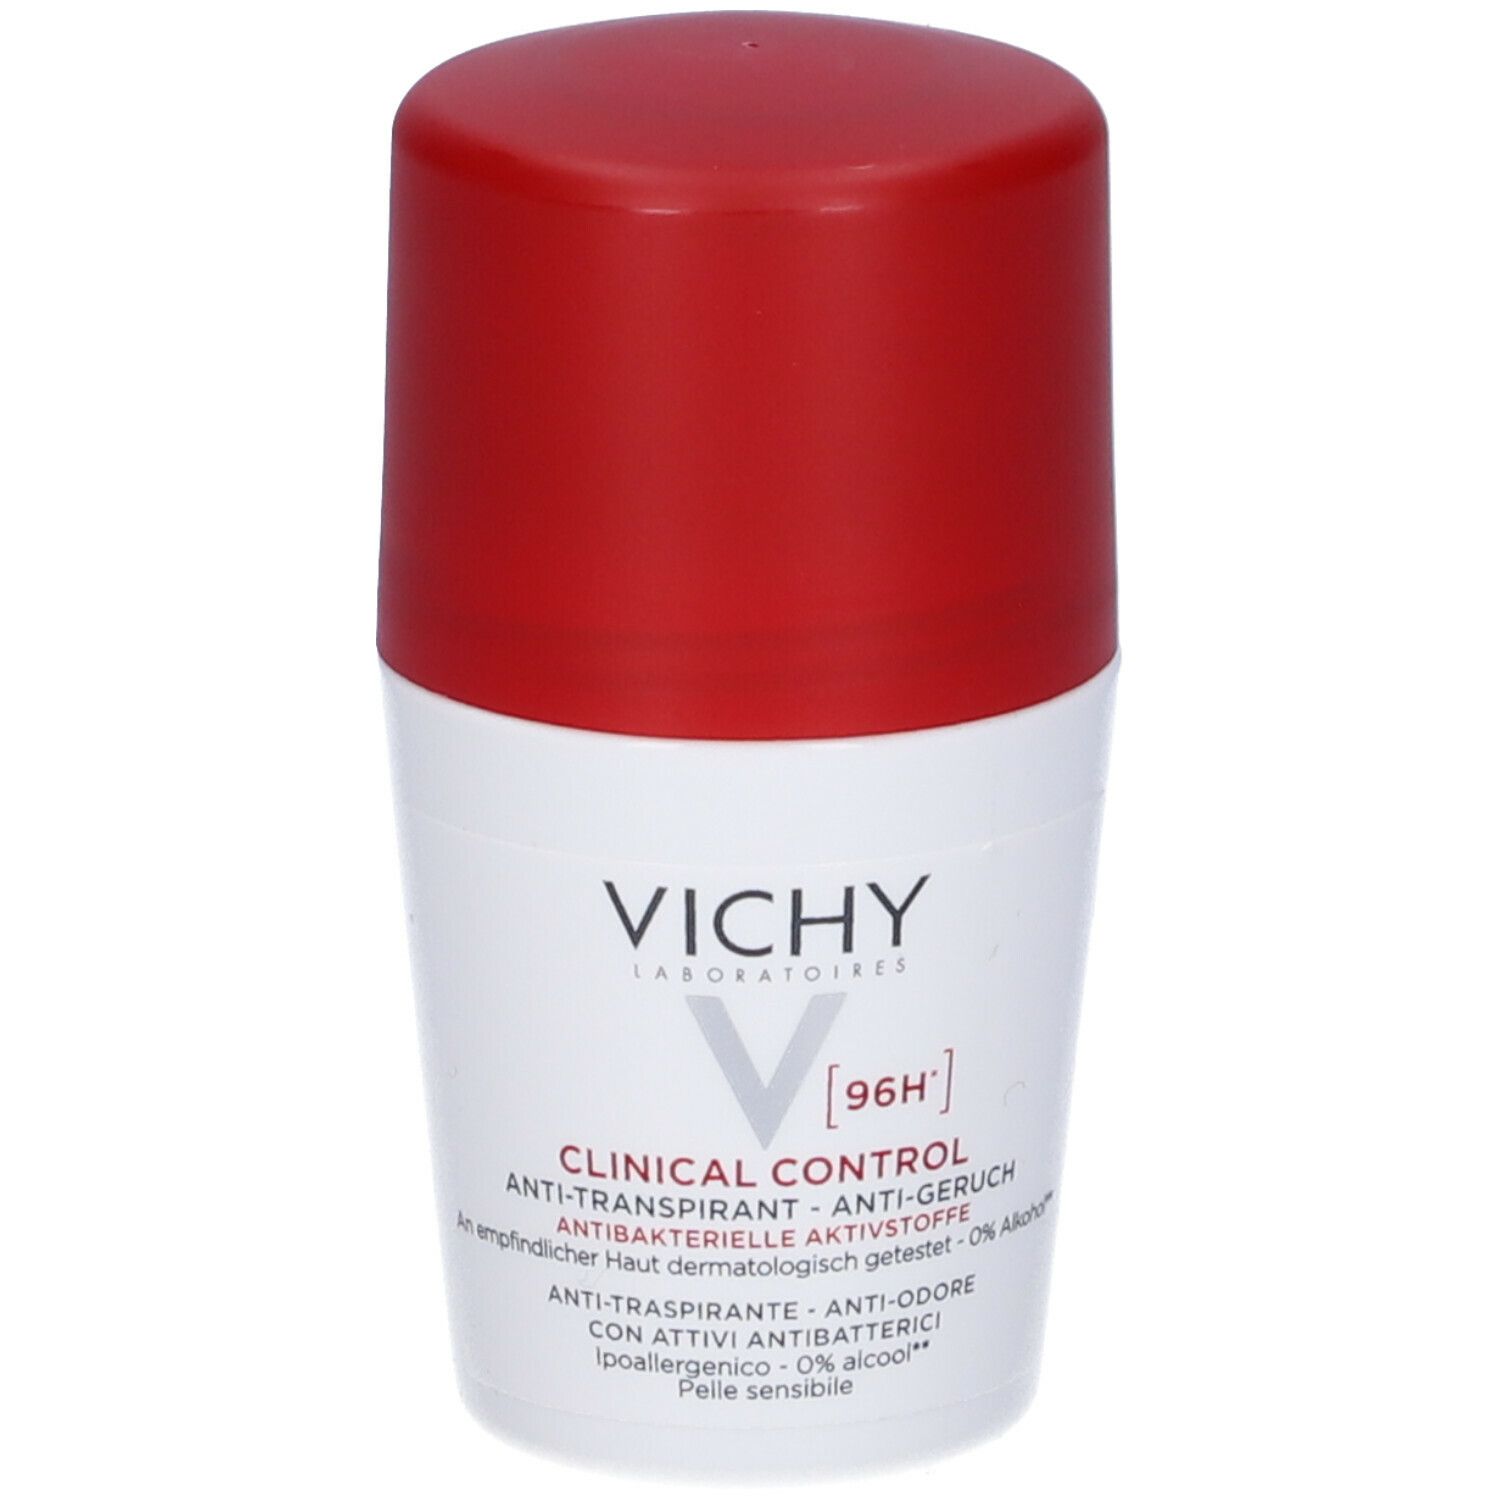 Image of Vichy Deodorante Clinical Control 96H Anti -Traspirante. No Alcool. Anti -Batterico. Ipoallergenico. Pelli Sensibili. Anti -Odore. 50 ml